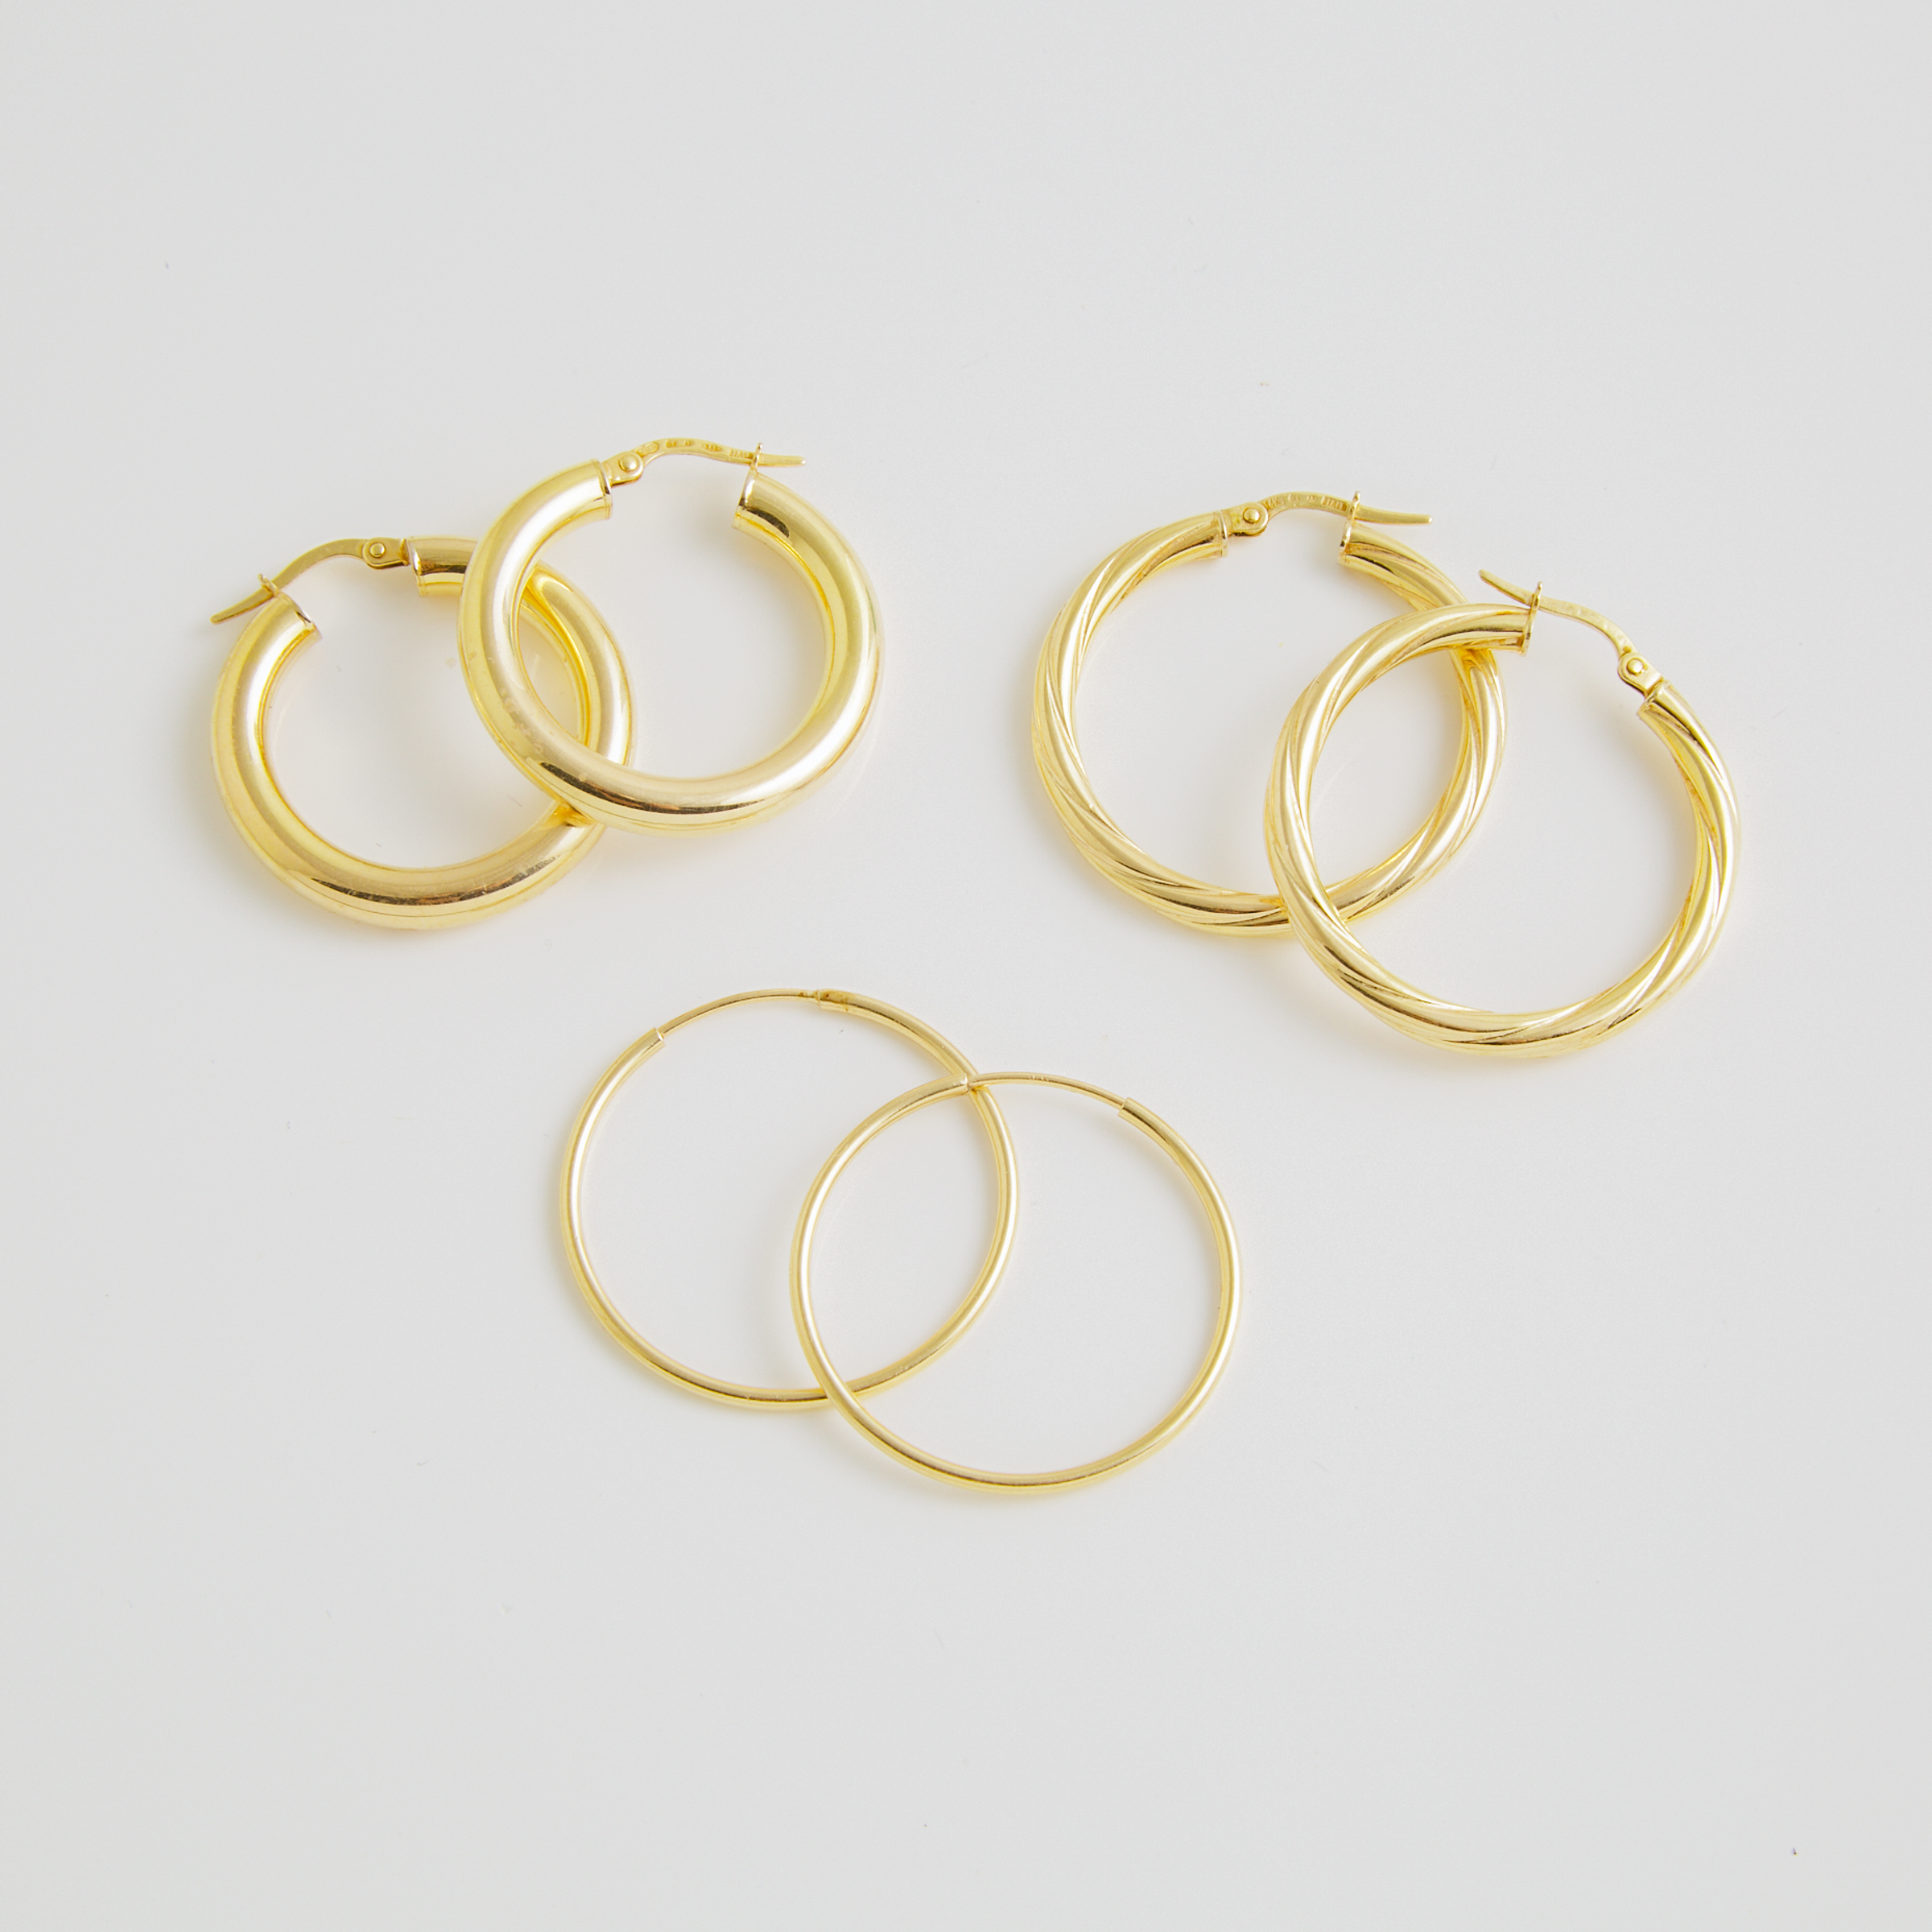 3 x Pairs Of 14k Yellow Gold Hoop Earrings